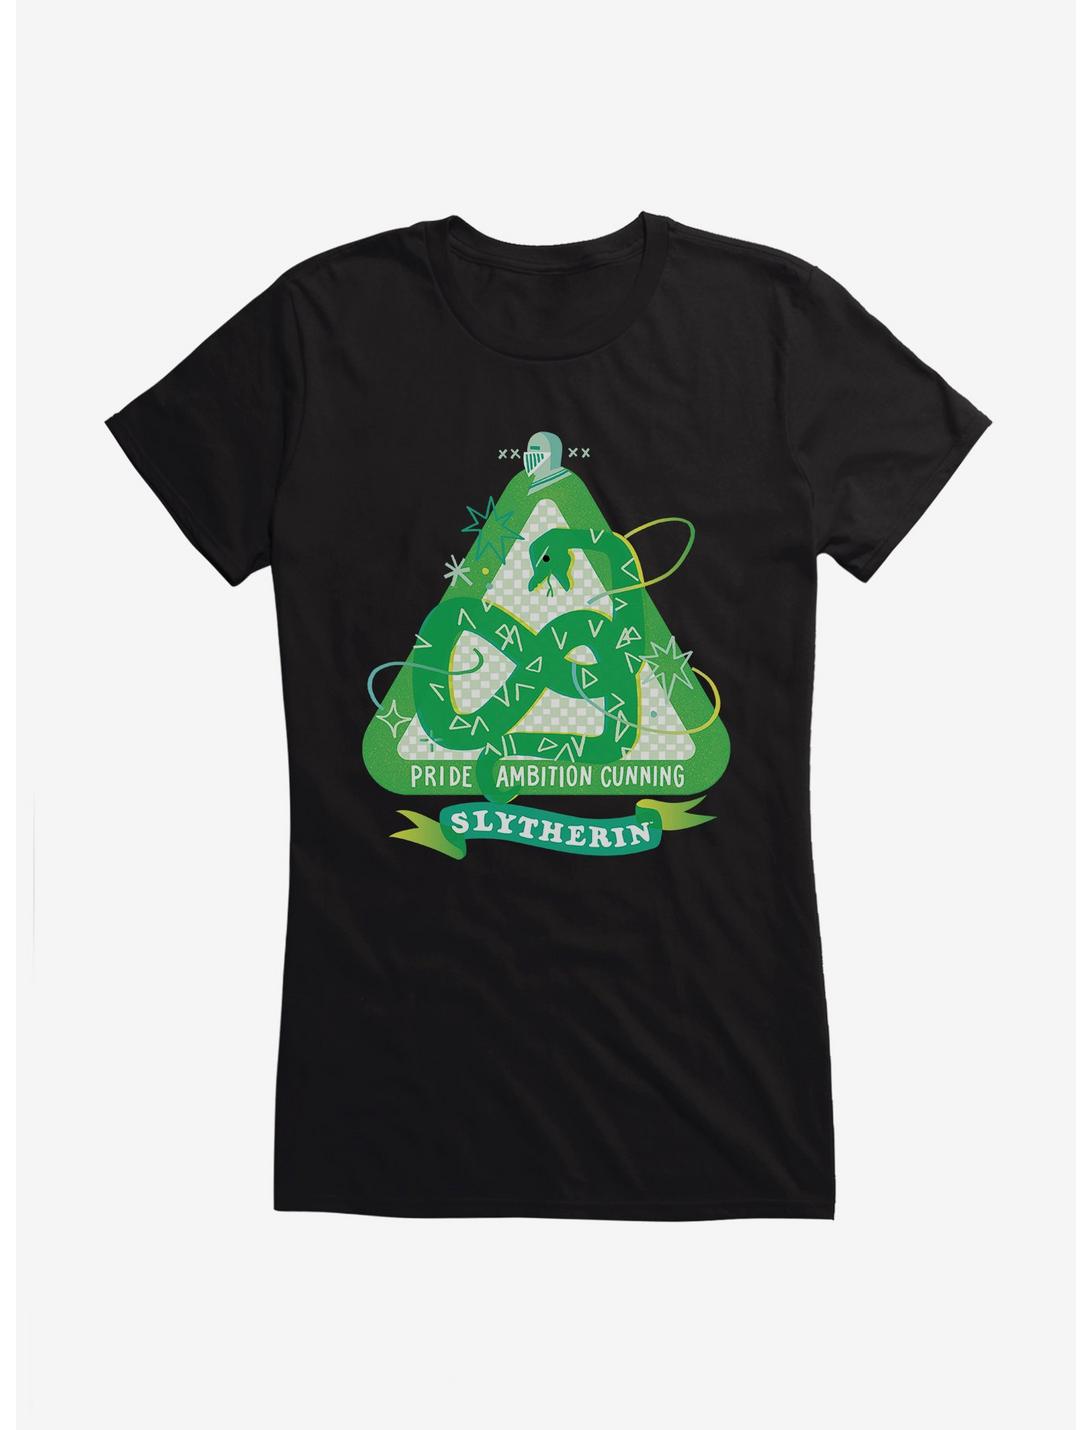 Harry Potter Slytherin Sparkles Girls T-Shirt, , hi-res